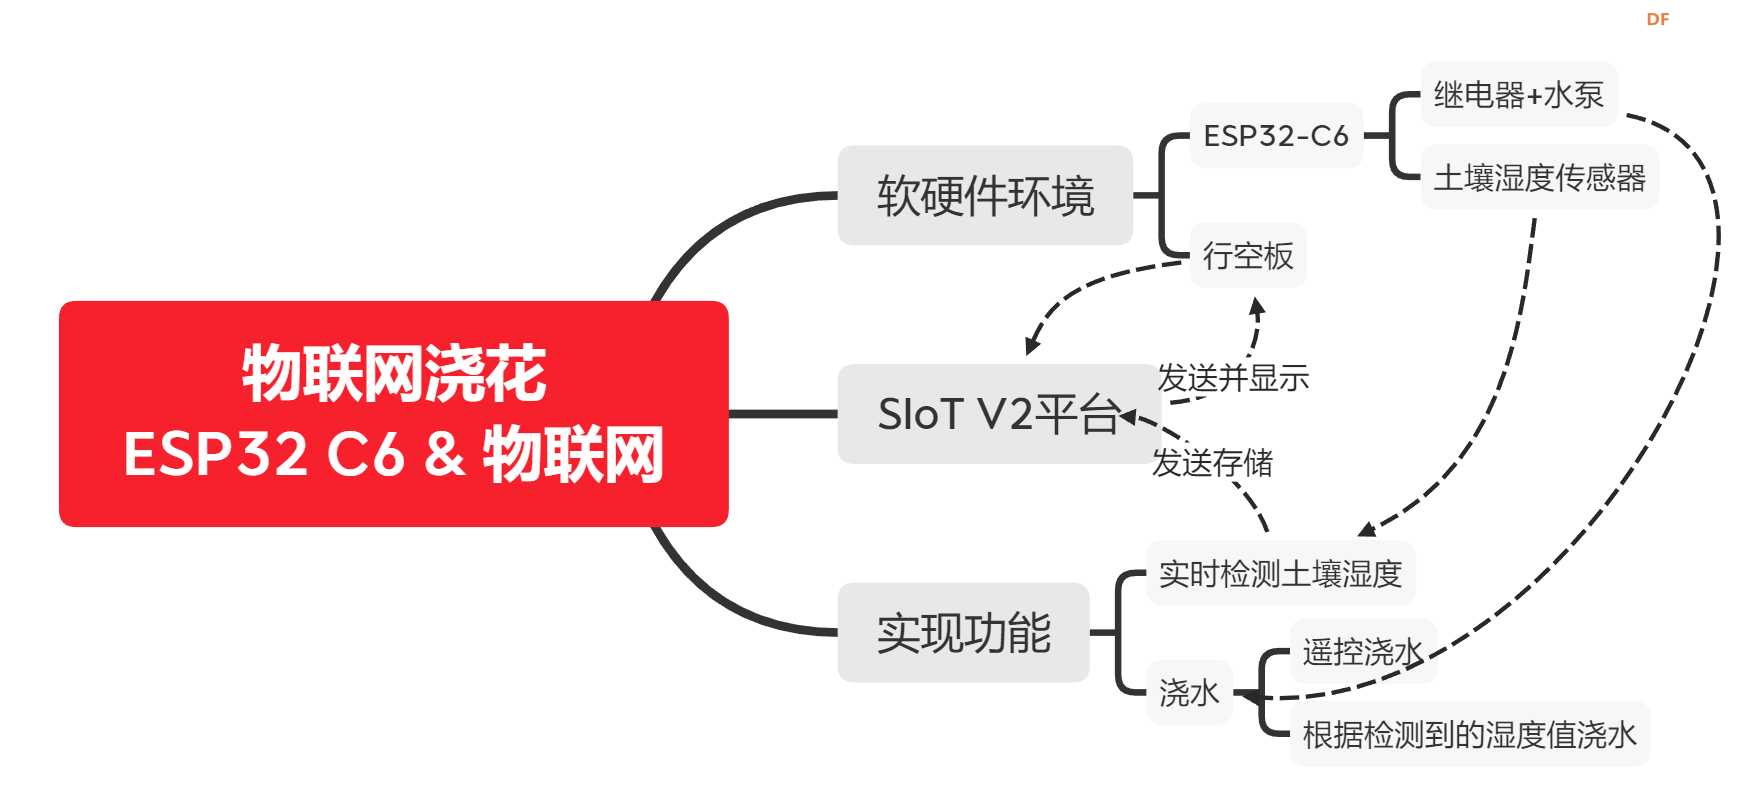 物联网浇花系统 ——基于ESP32 C6 + SIoT + 行空板图2